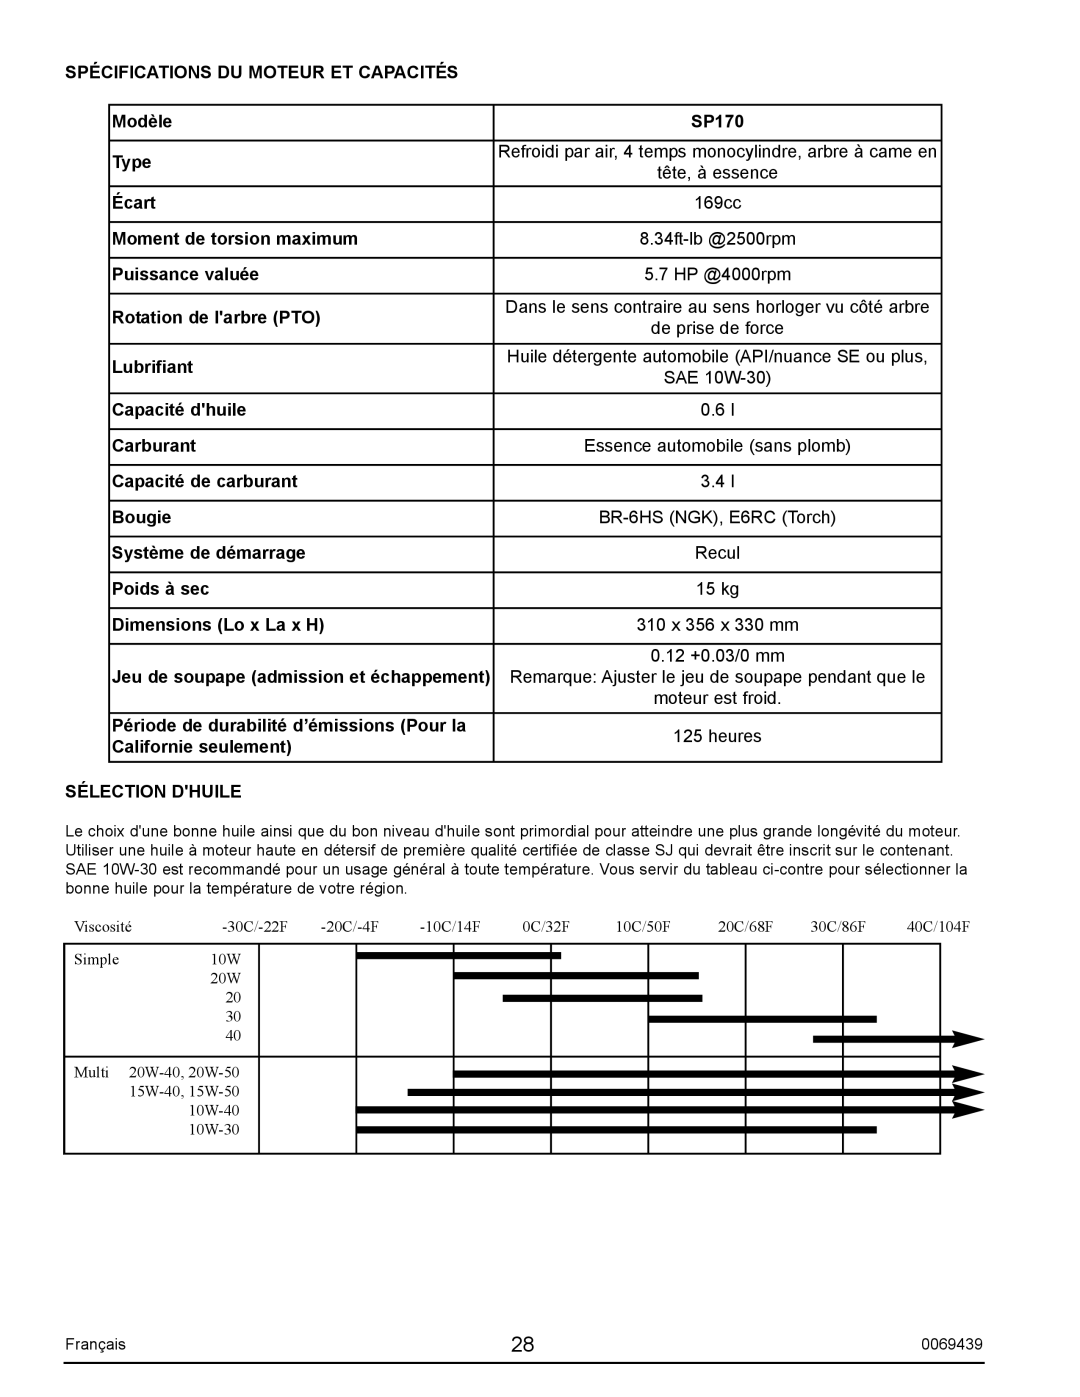 Sears S2800 user manual Spécifications Du Moteur Et Capacités 